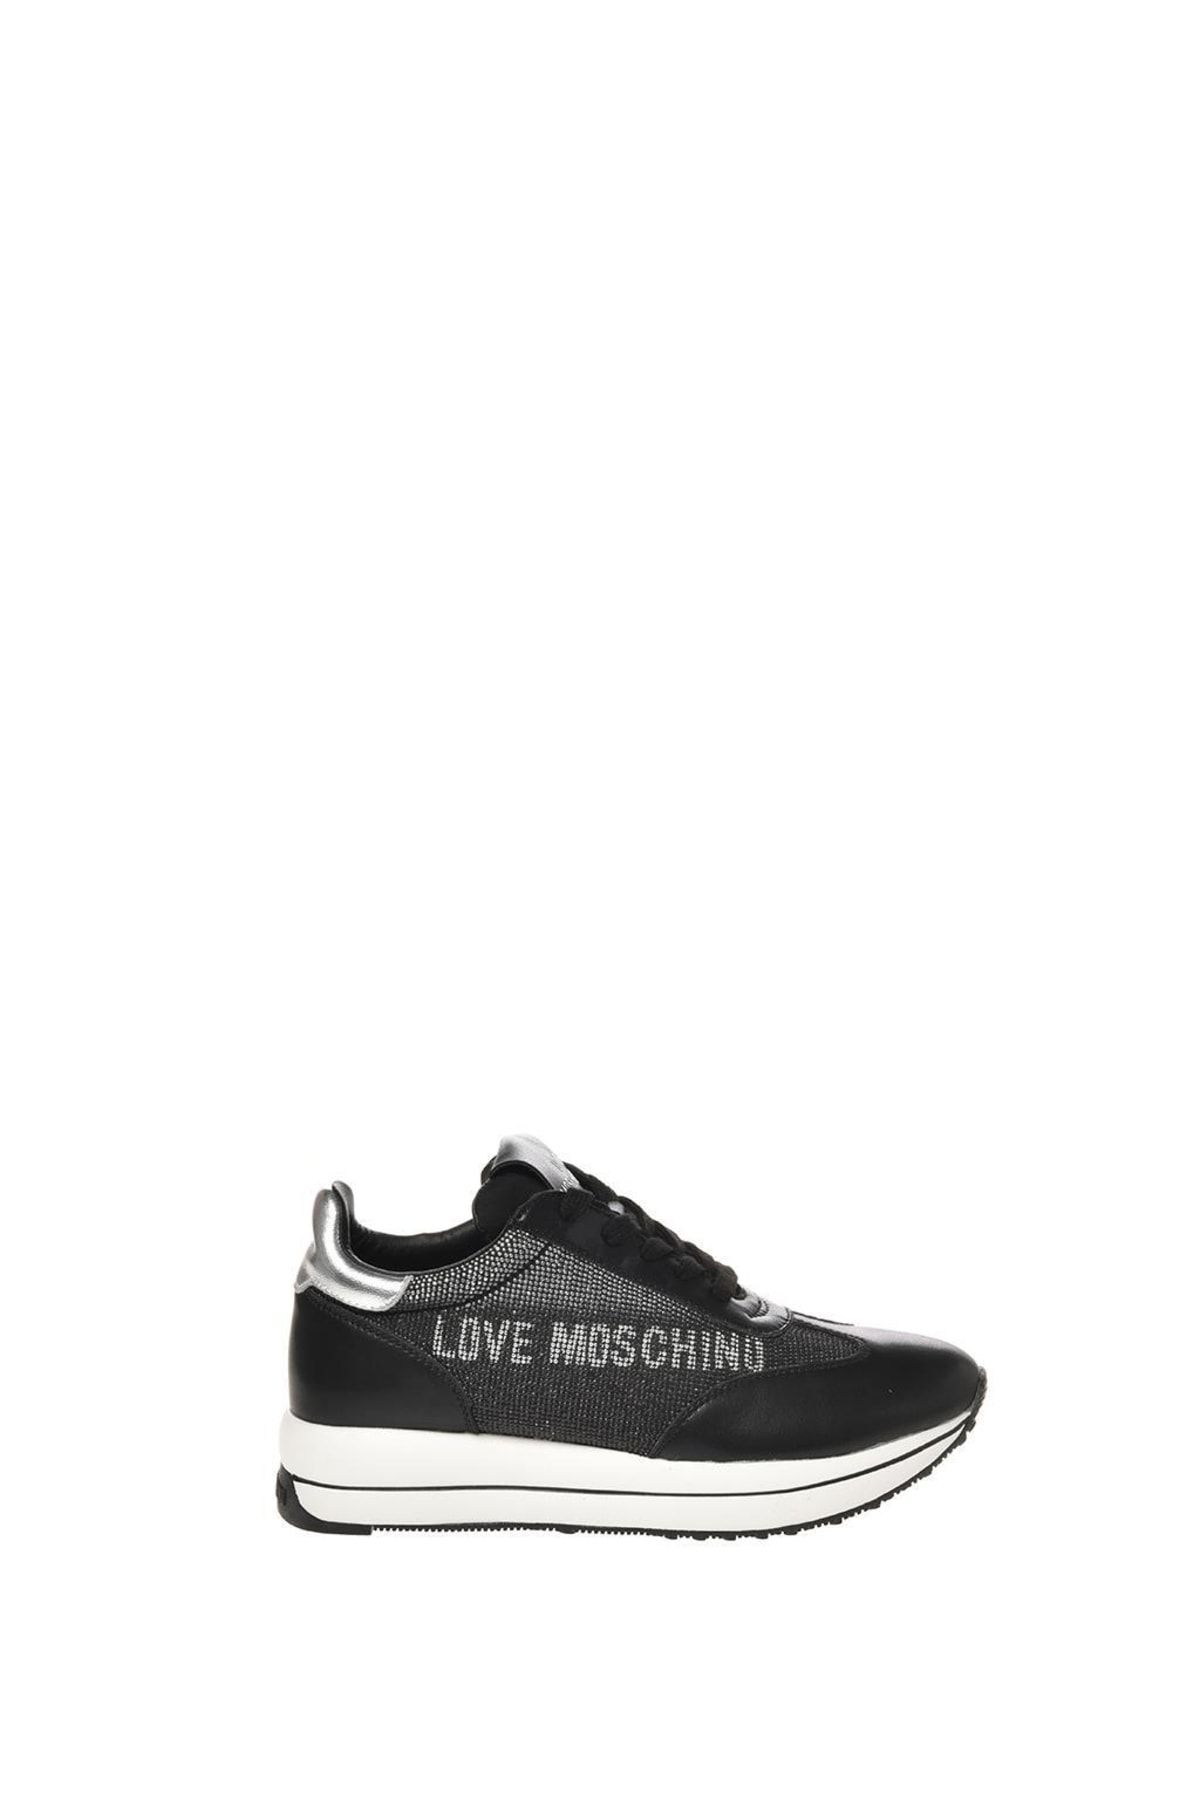 Moschino Moschını Sneaker Kadın Ayakkabısı